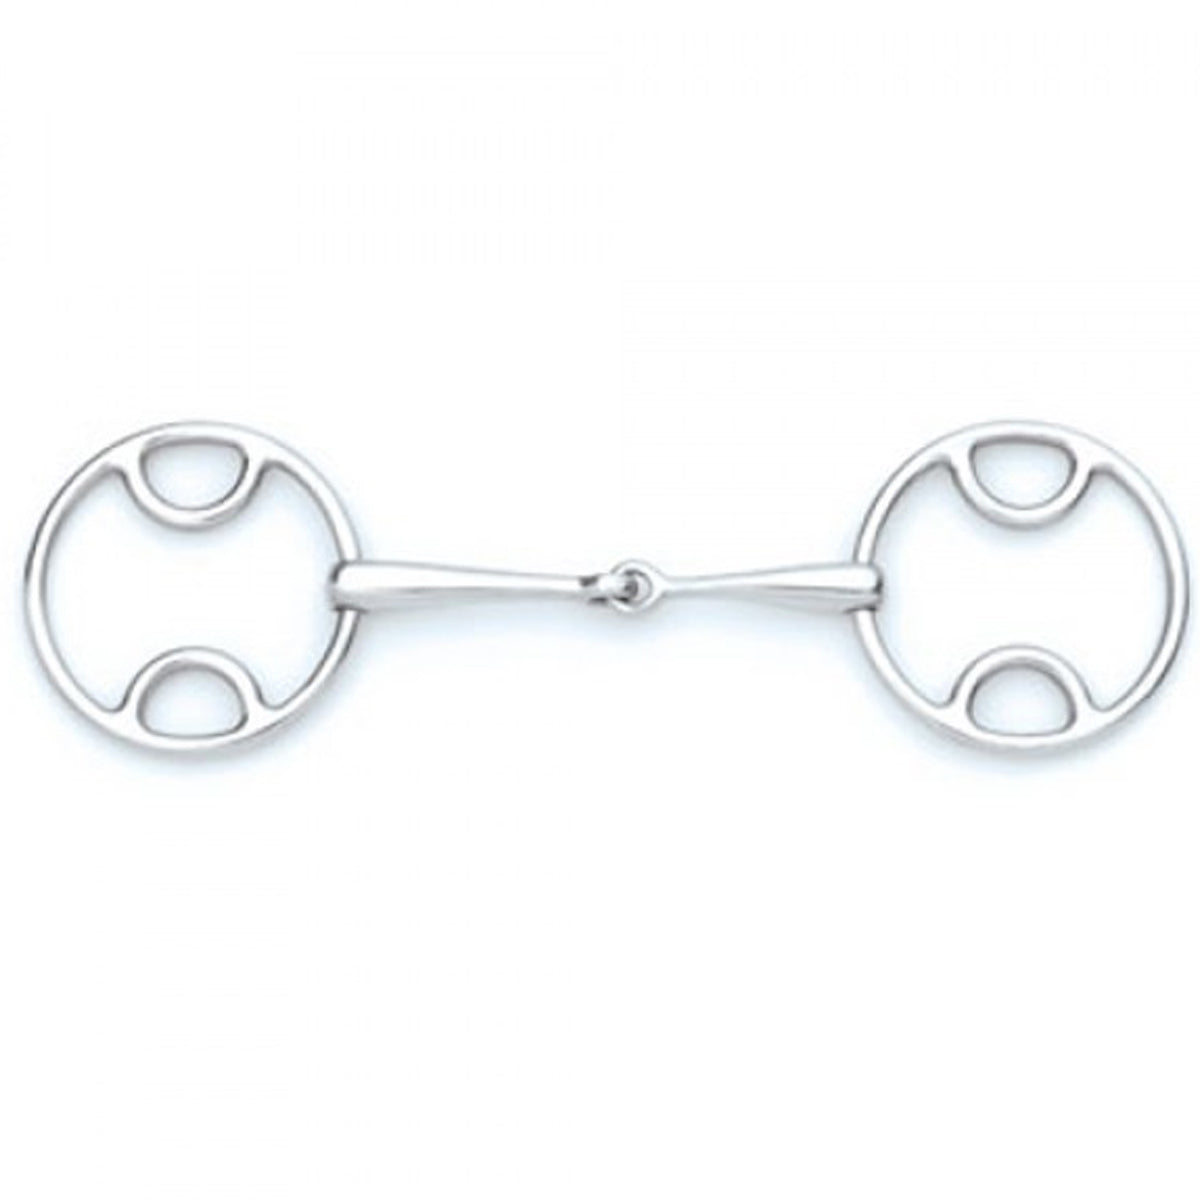 Centaur Stainless Steel Loop Ring Gag Bit